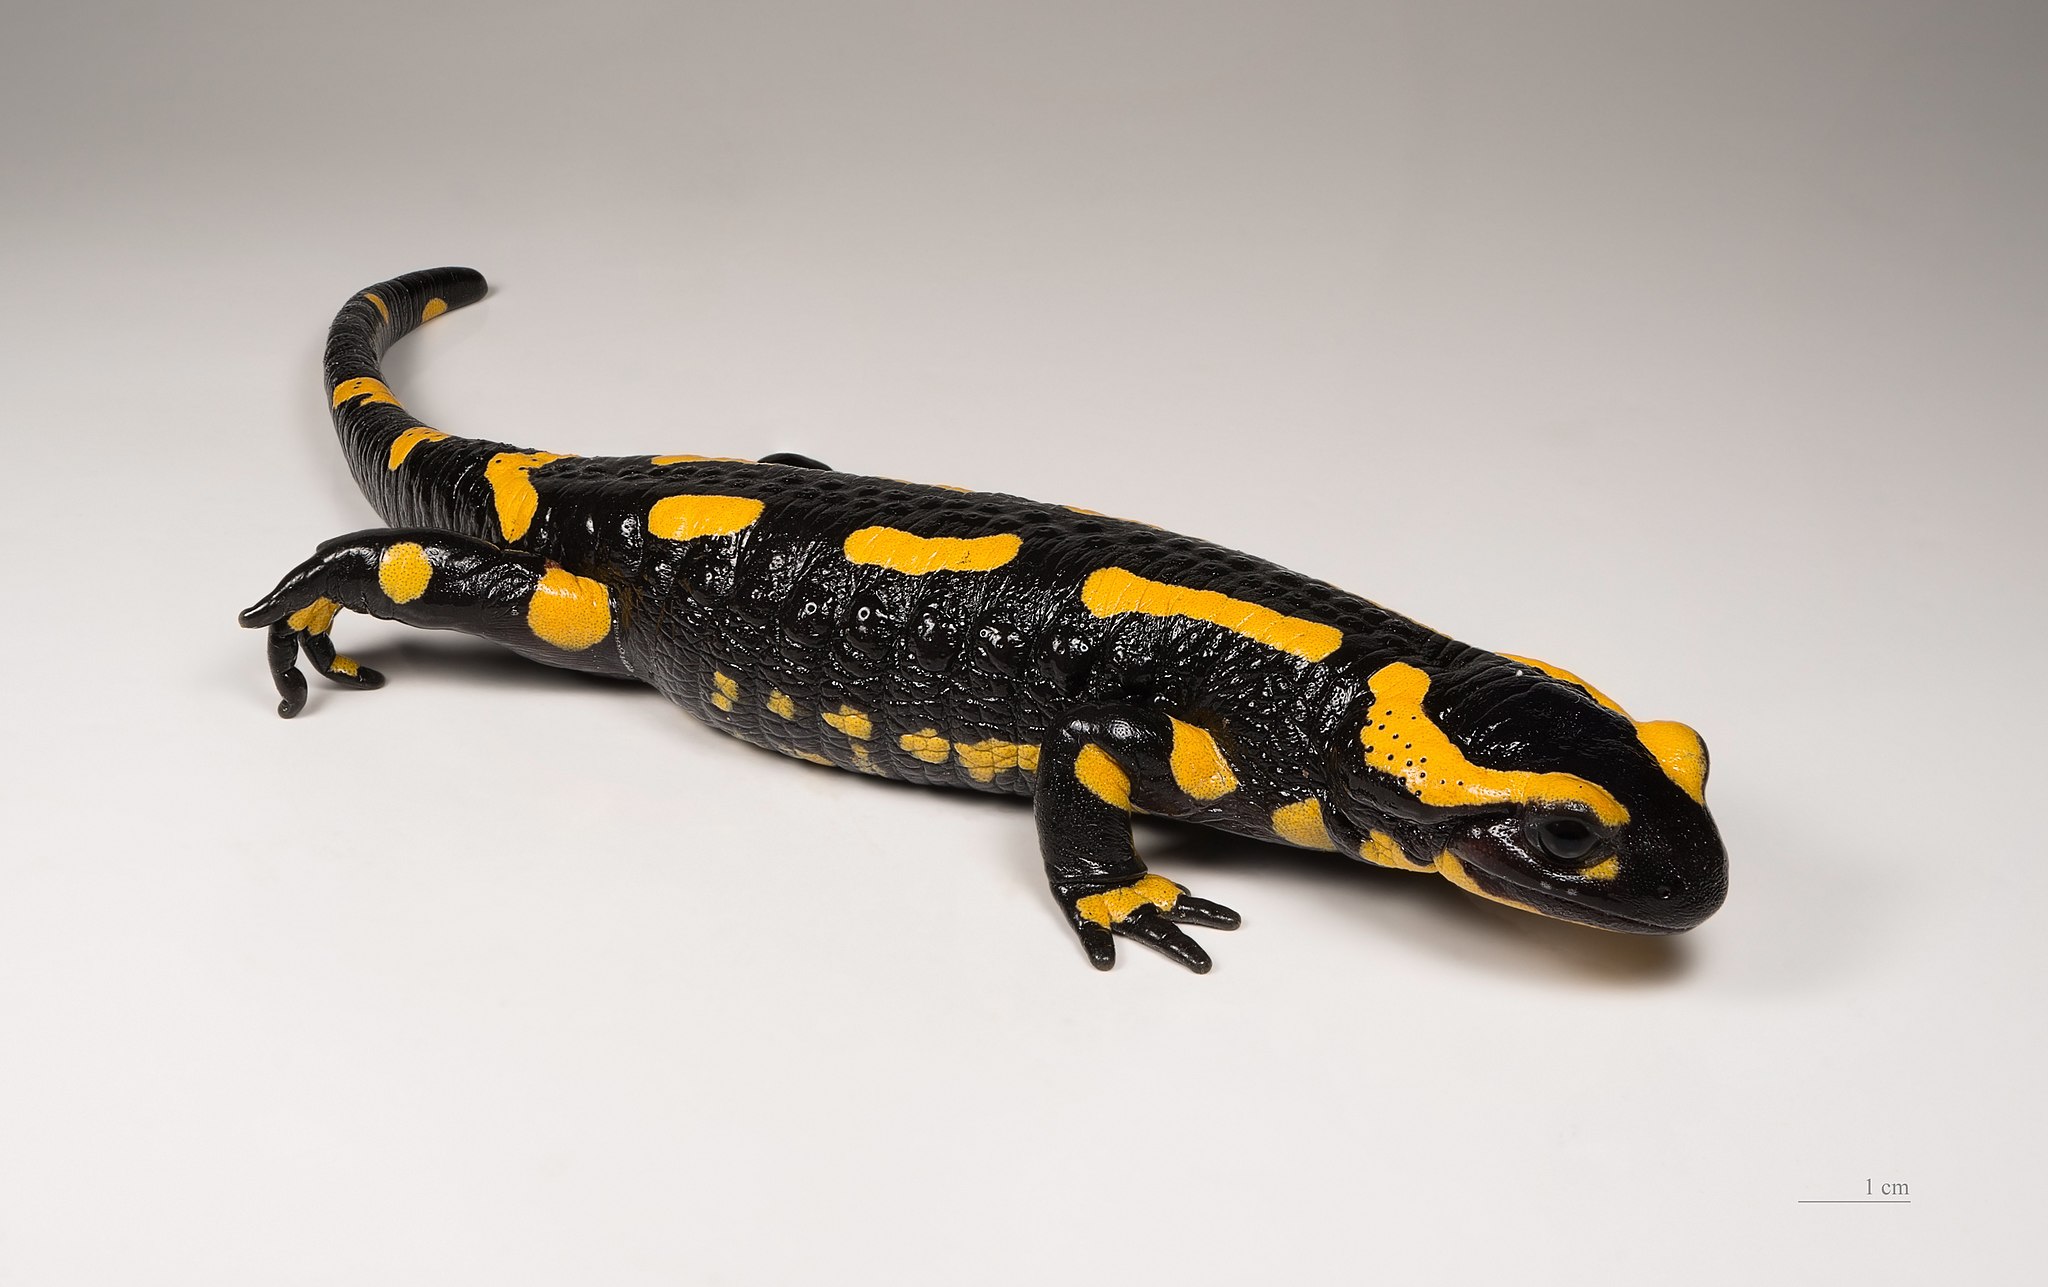 a black and yellow salamander